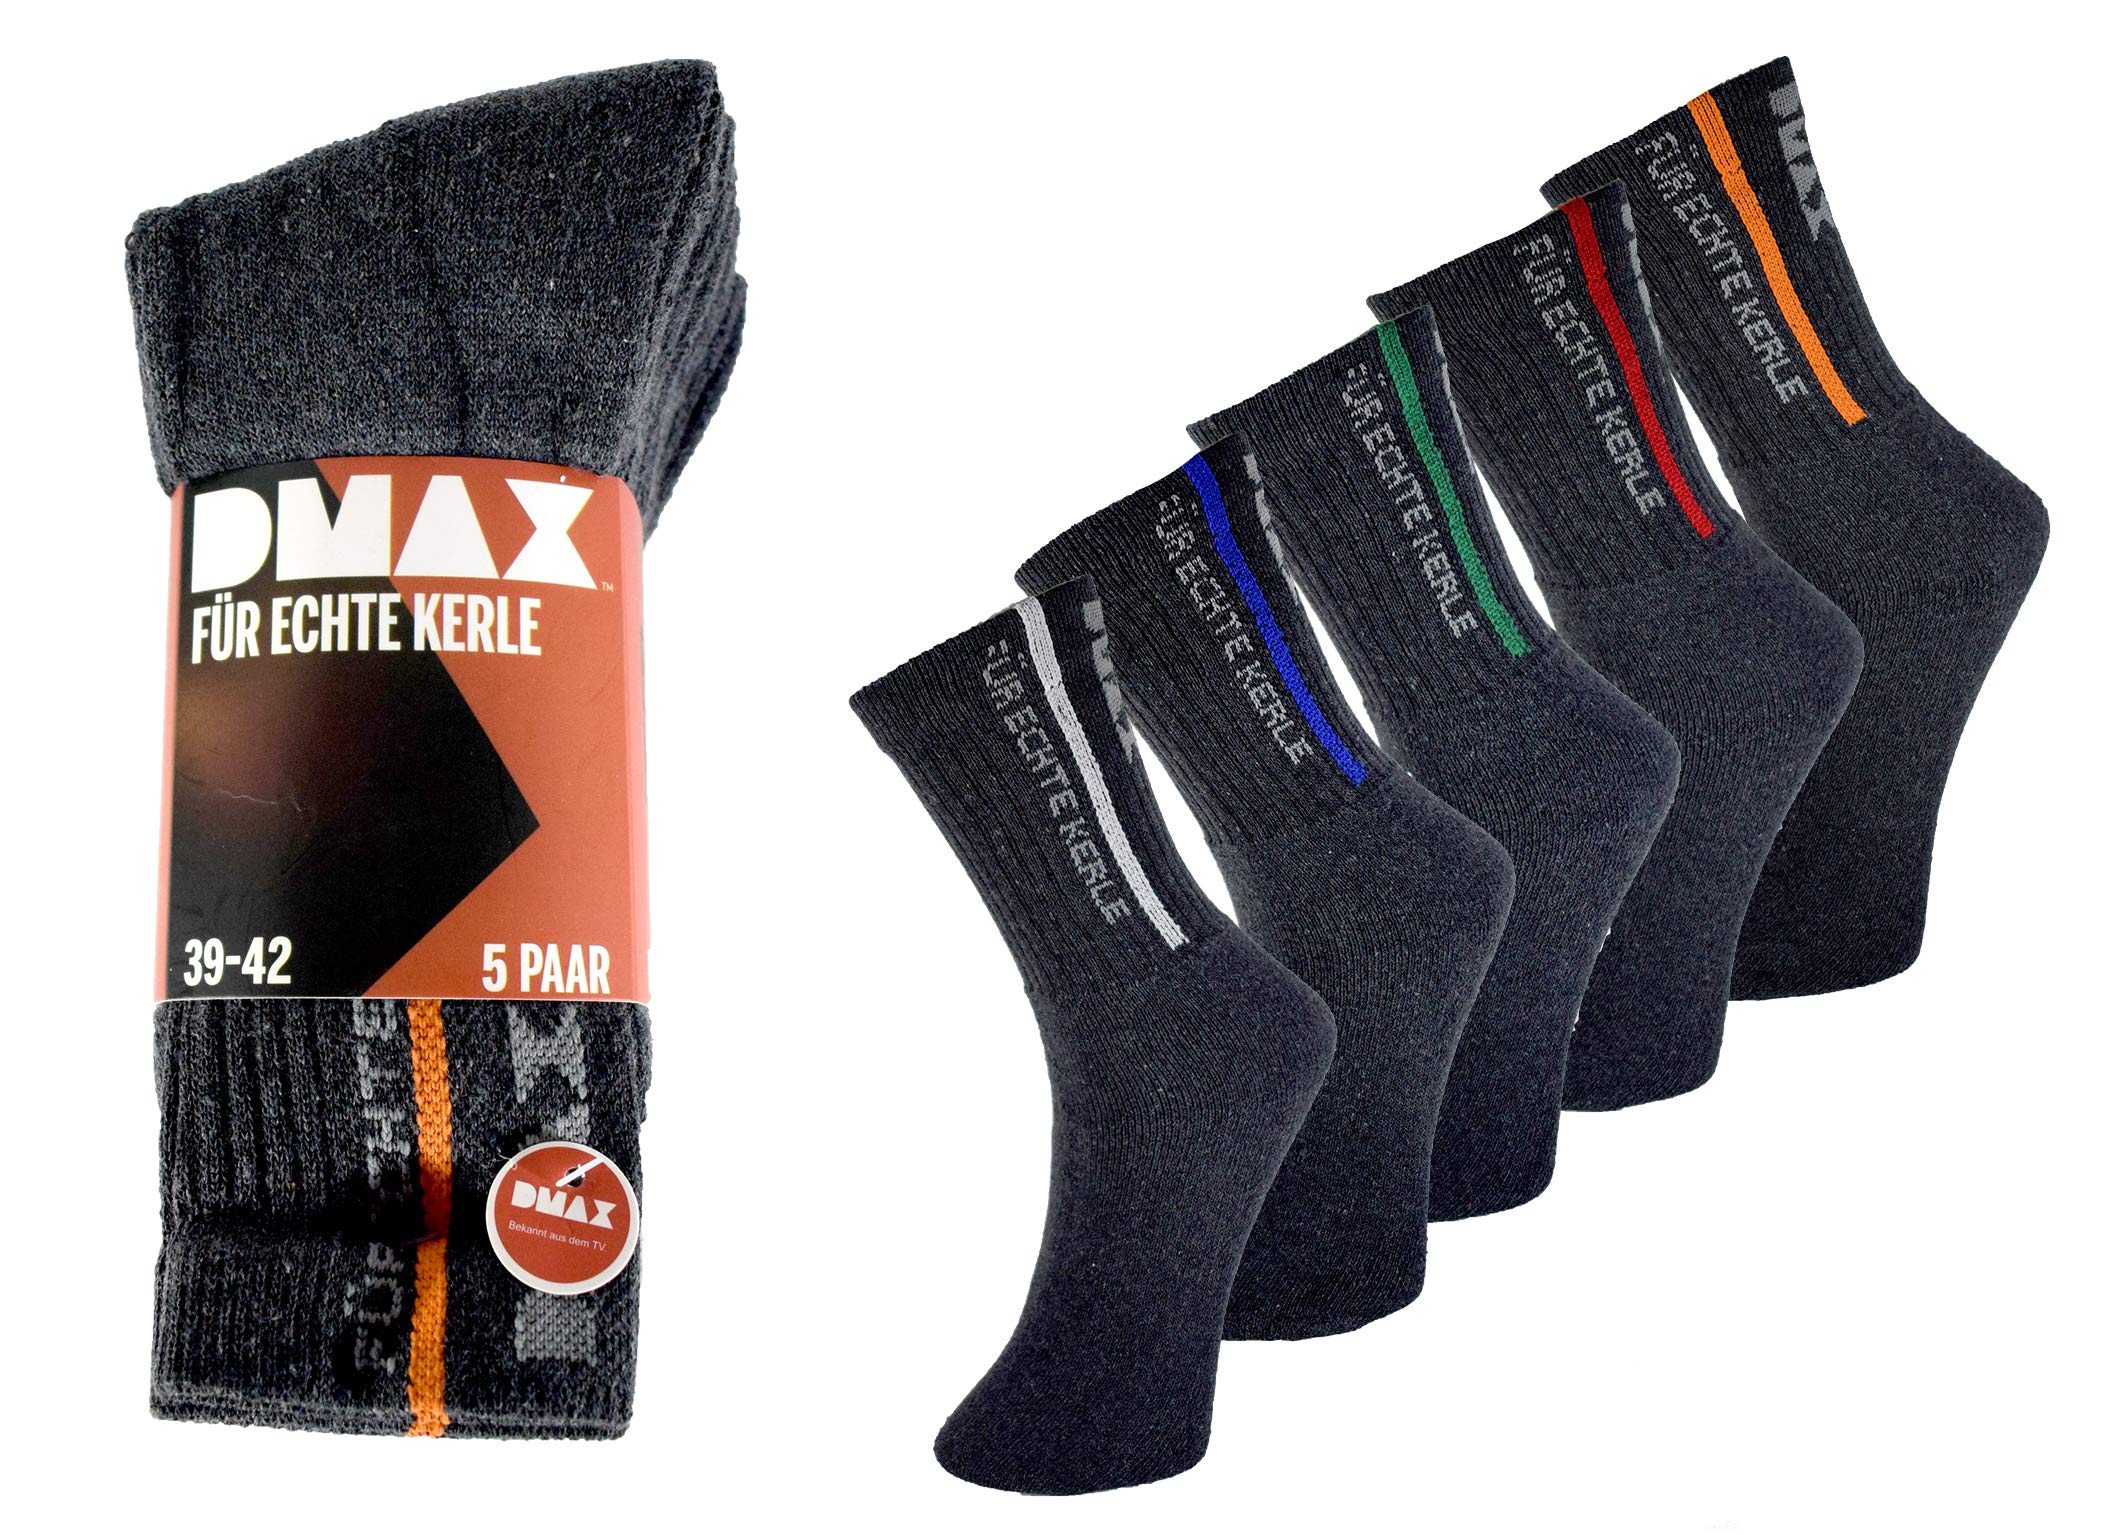 DMAX Allrounder Socken für echte Kerle - 5|10|15|20 Paar - wahlweise in Schwarz, Anthrazit, Blau und drei Größen 39-42/43-46/47-50 (39-42, 15 Paar Anthrazit)